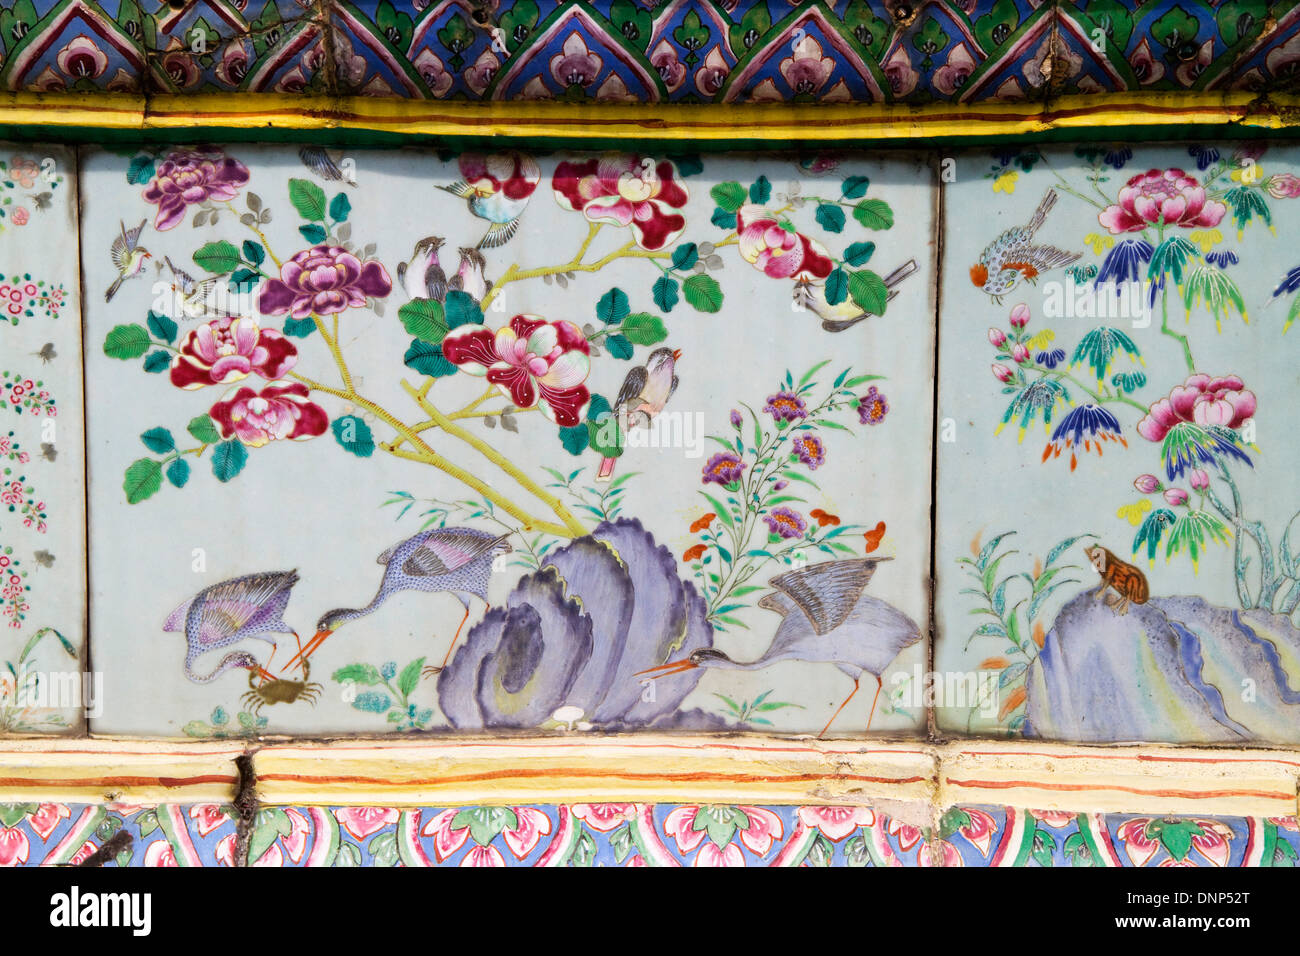 Vögel und Blumen zieren handgemalte keramische Platten, die einige der Wände in den Grand Palace.Bangkok,Thailand säumen. Stockfoto